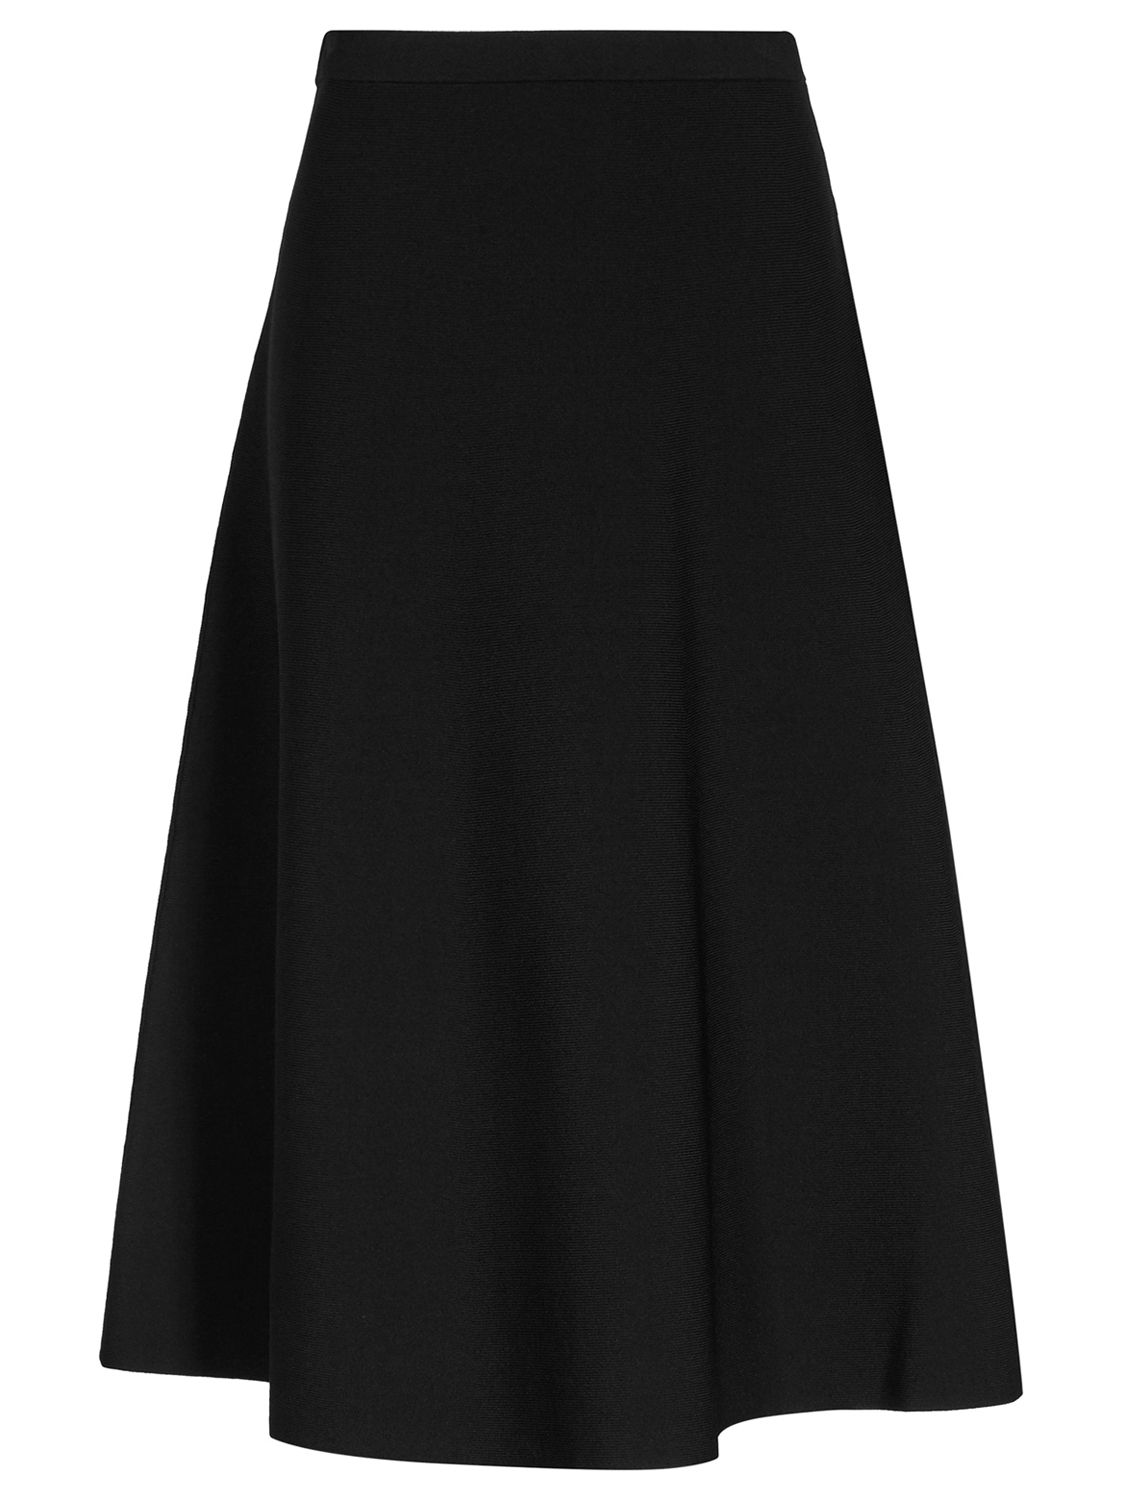 Reiss Loretta A-Line Knitted Skirt, Black